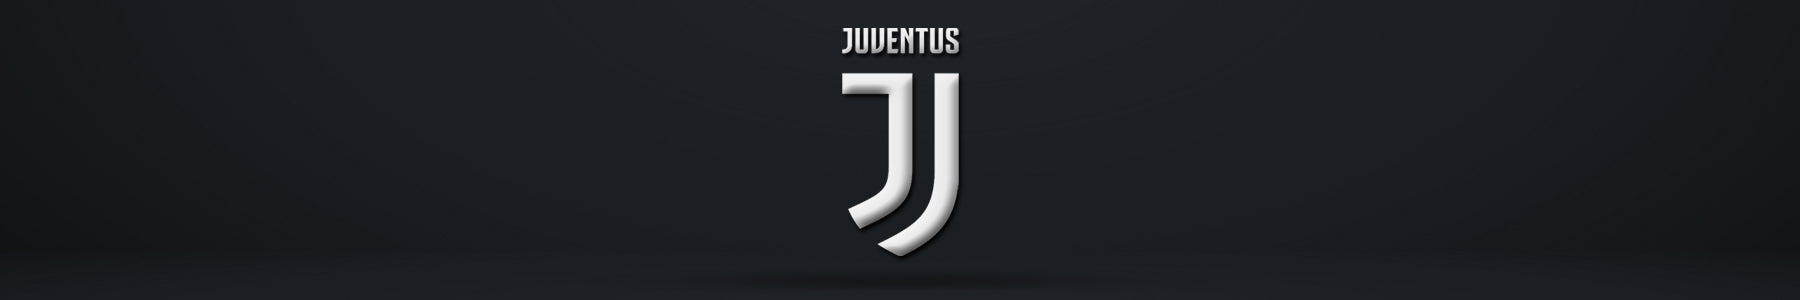 Juventus FC Banner